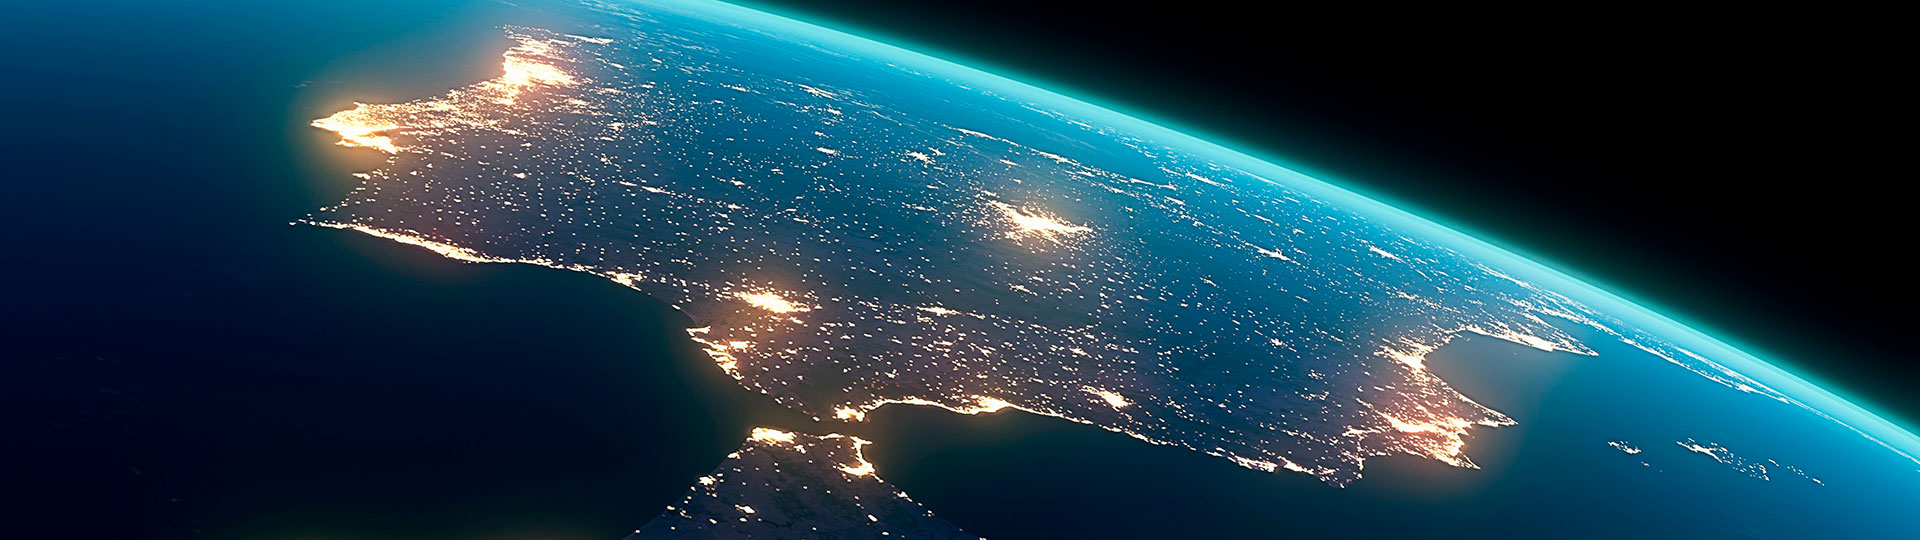 La péninsule Ibérique depuis l'espace